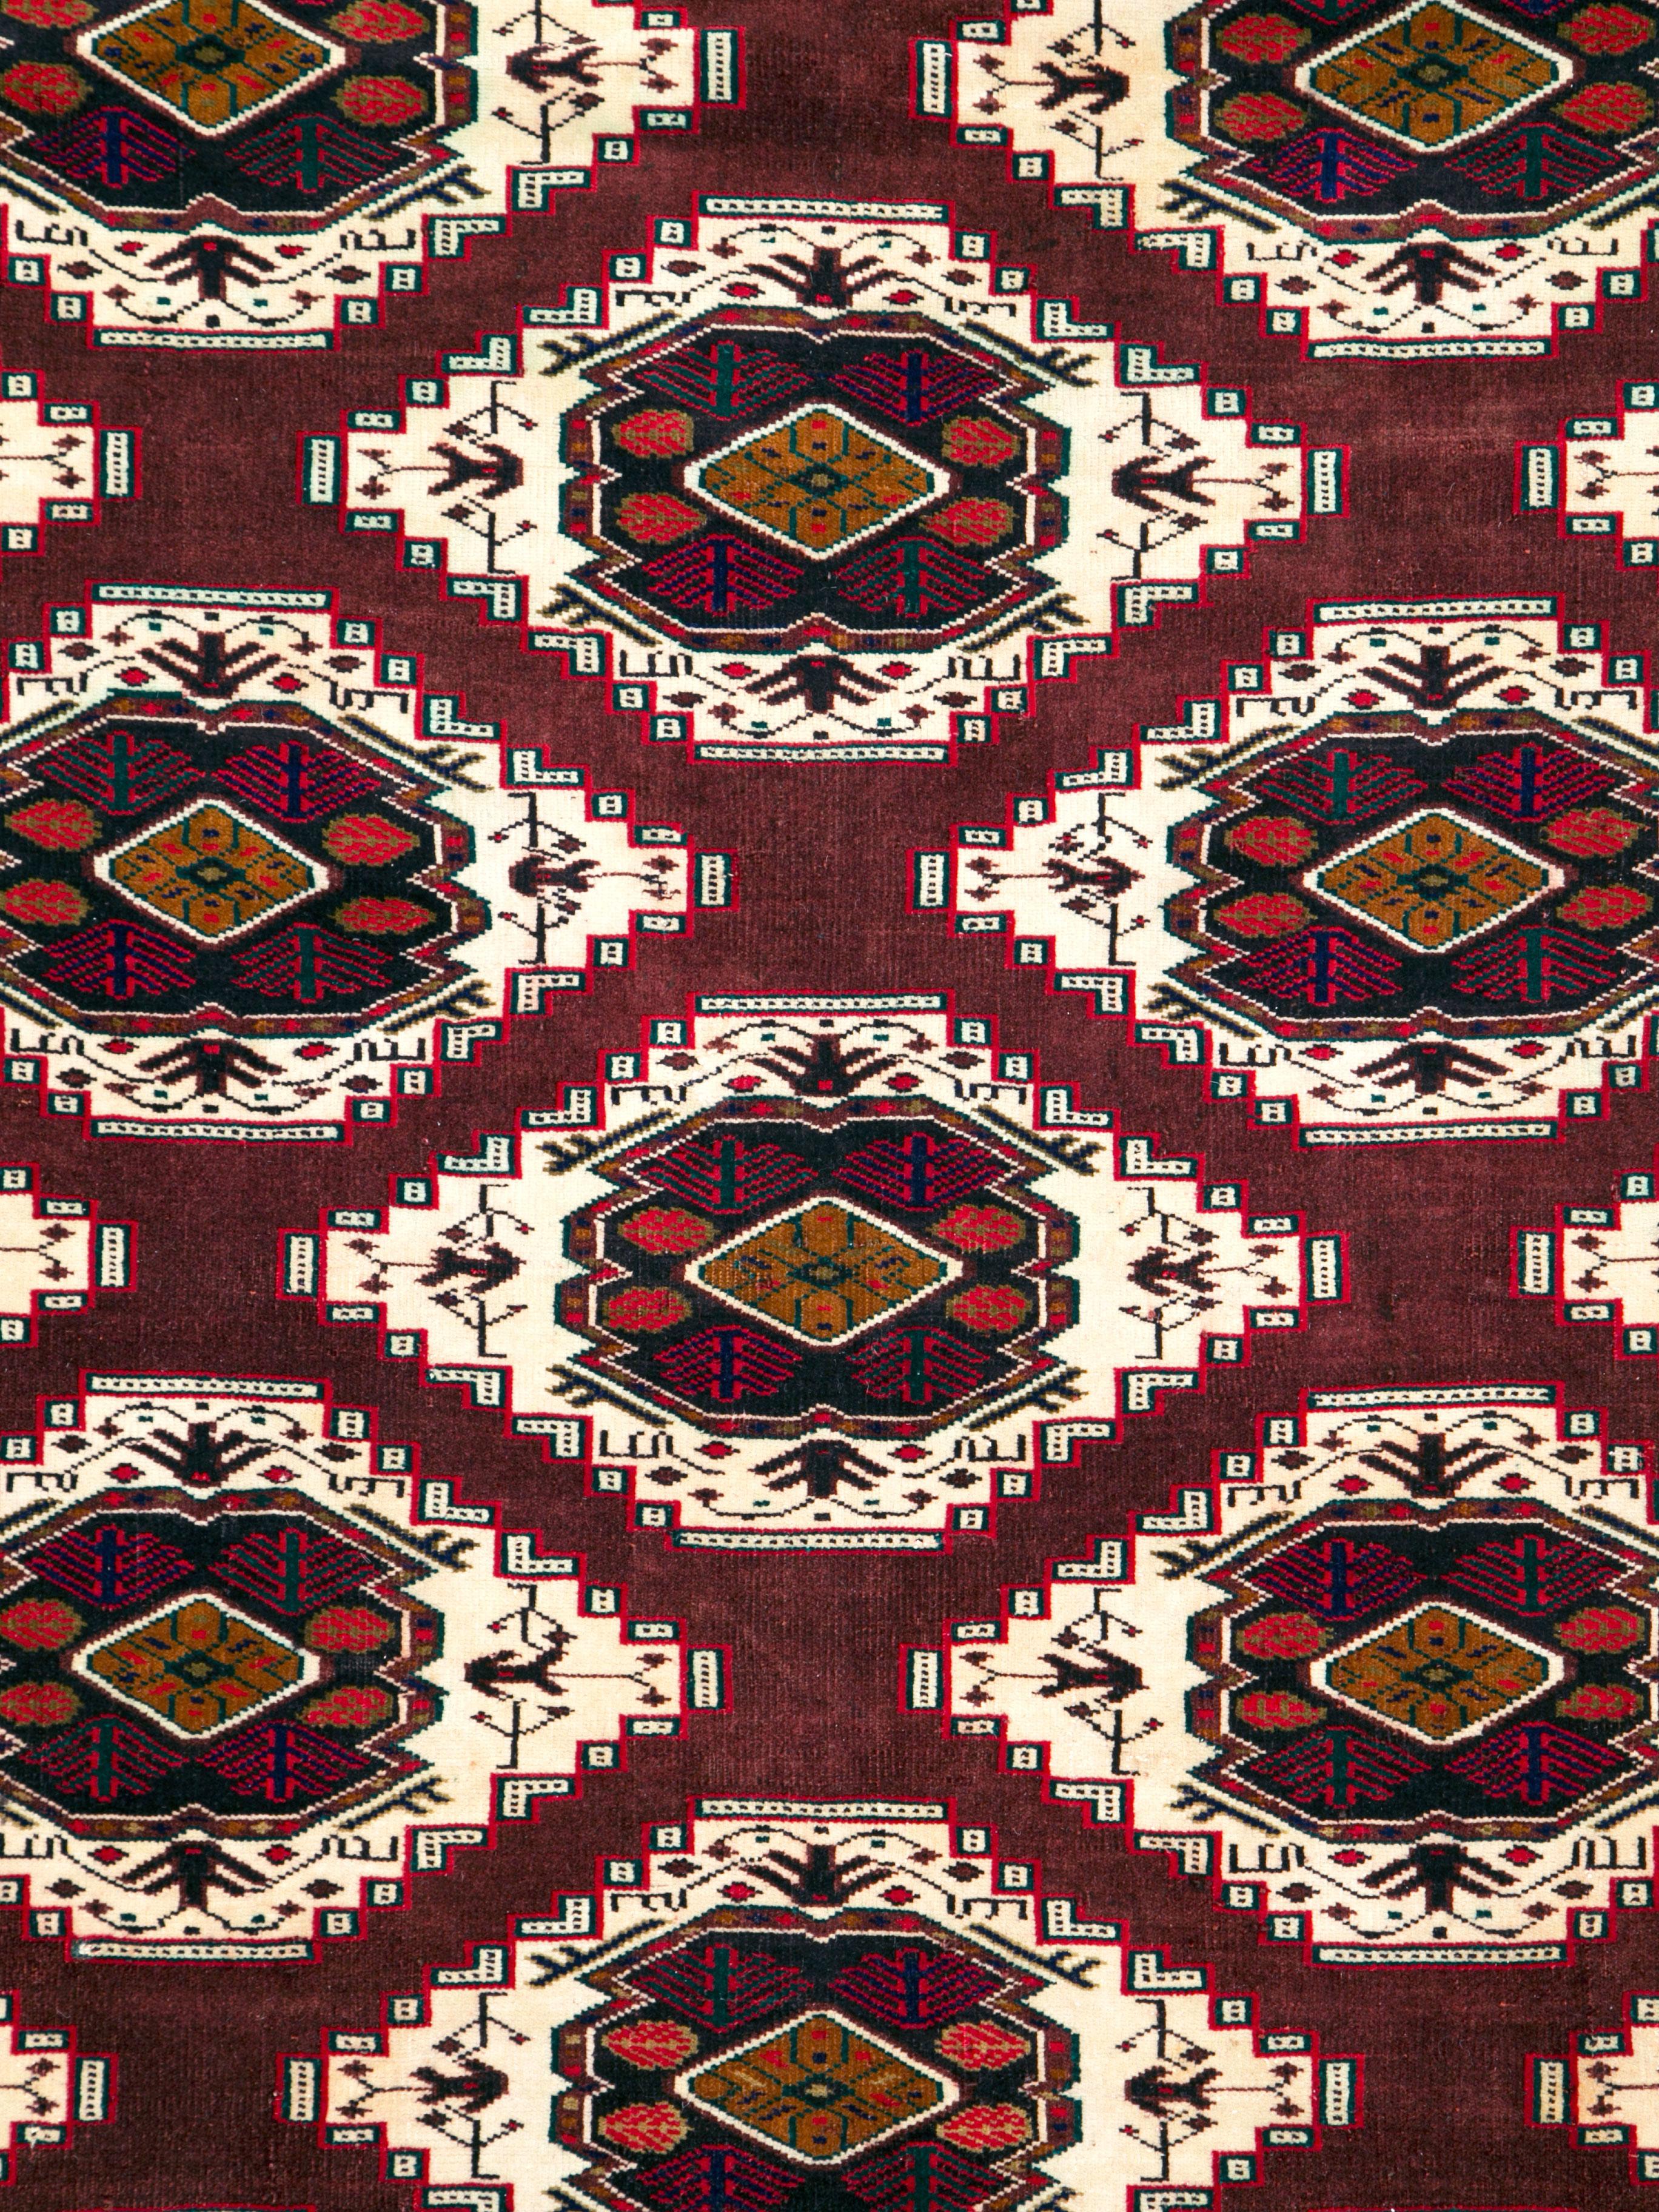 Ein alter zentralasiatischer Turkoman-Teppich aus der Mitte des 20. Jahrhunderts.

Maße: 6' 7